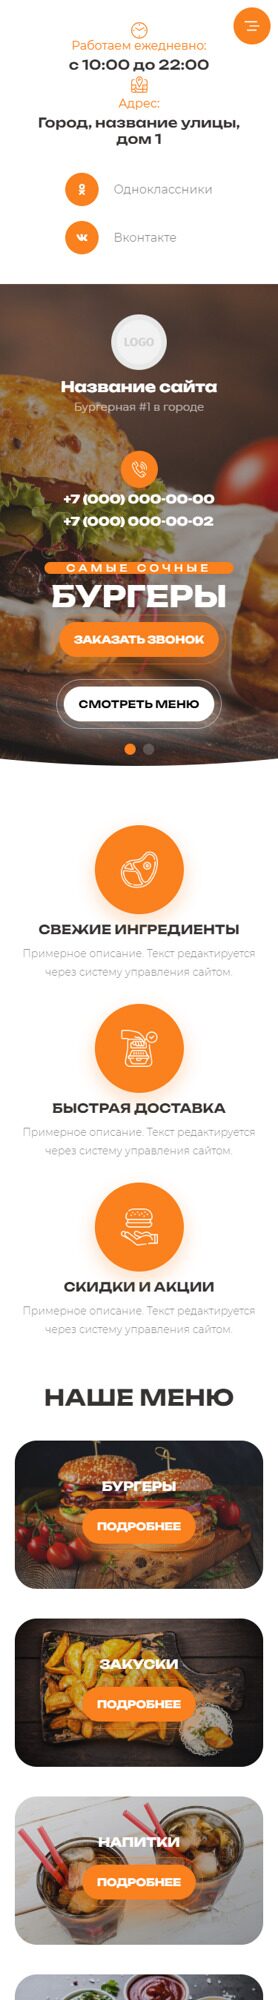 Готовый Сайт-Бизнес № 5716131 - Бургерная в Москве (Мобильная версия)